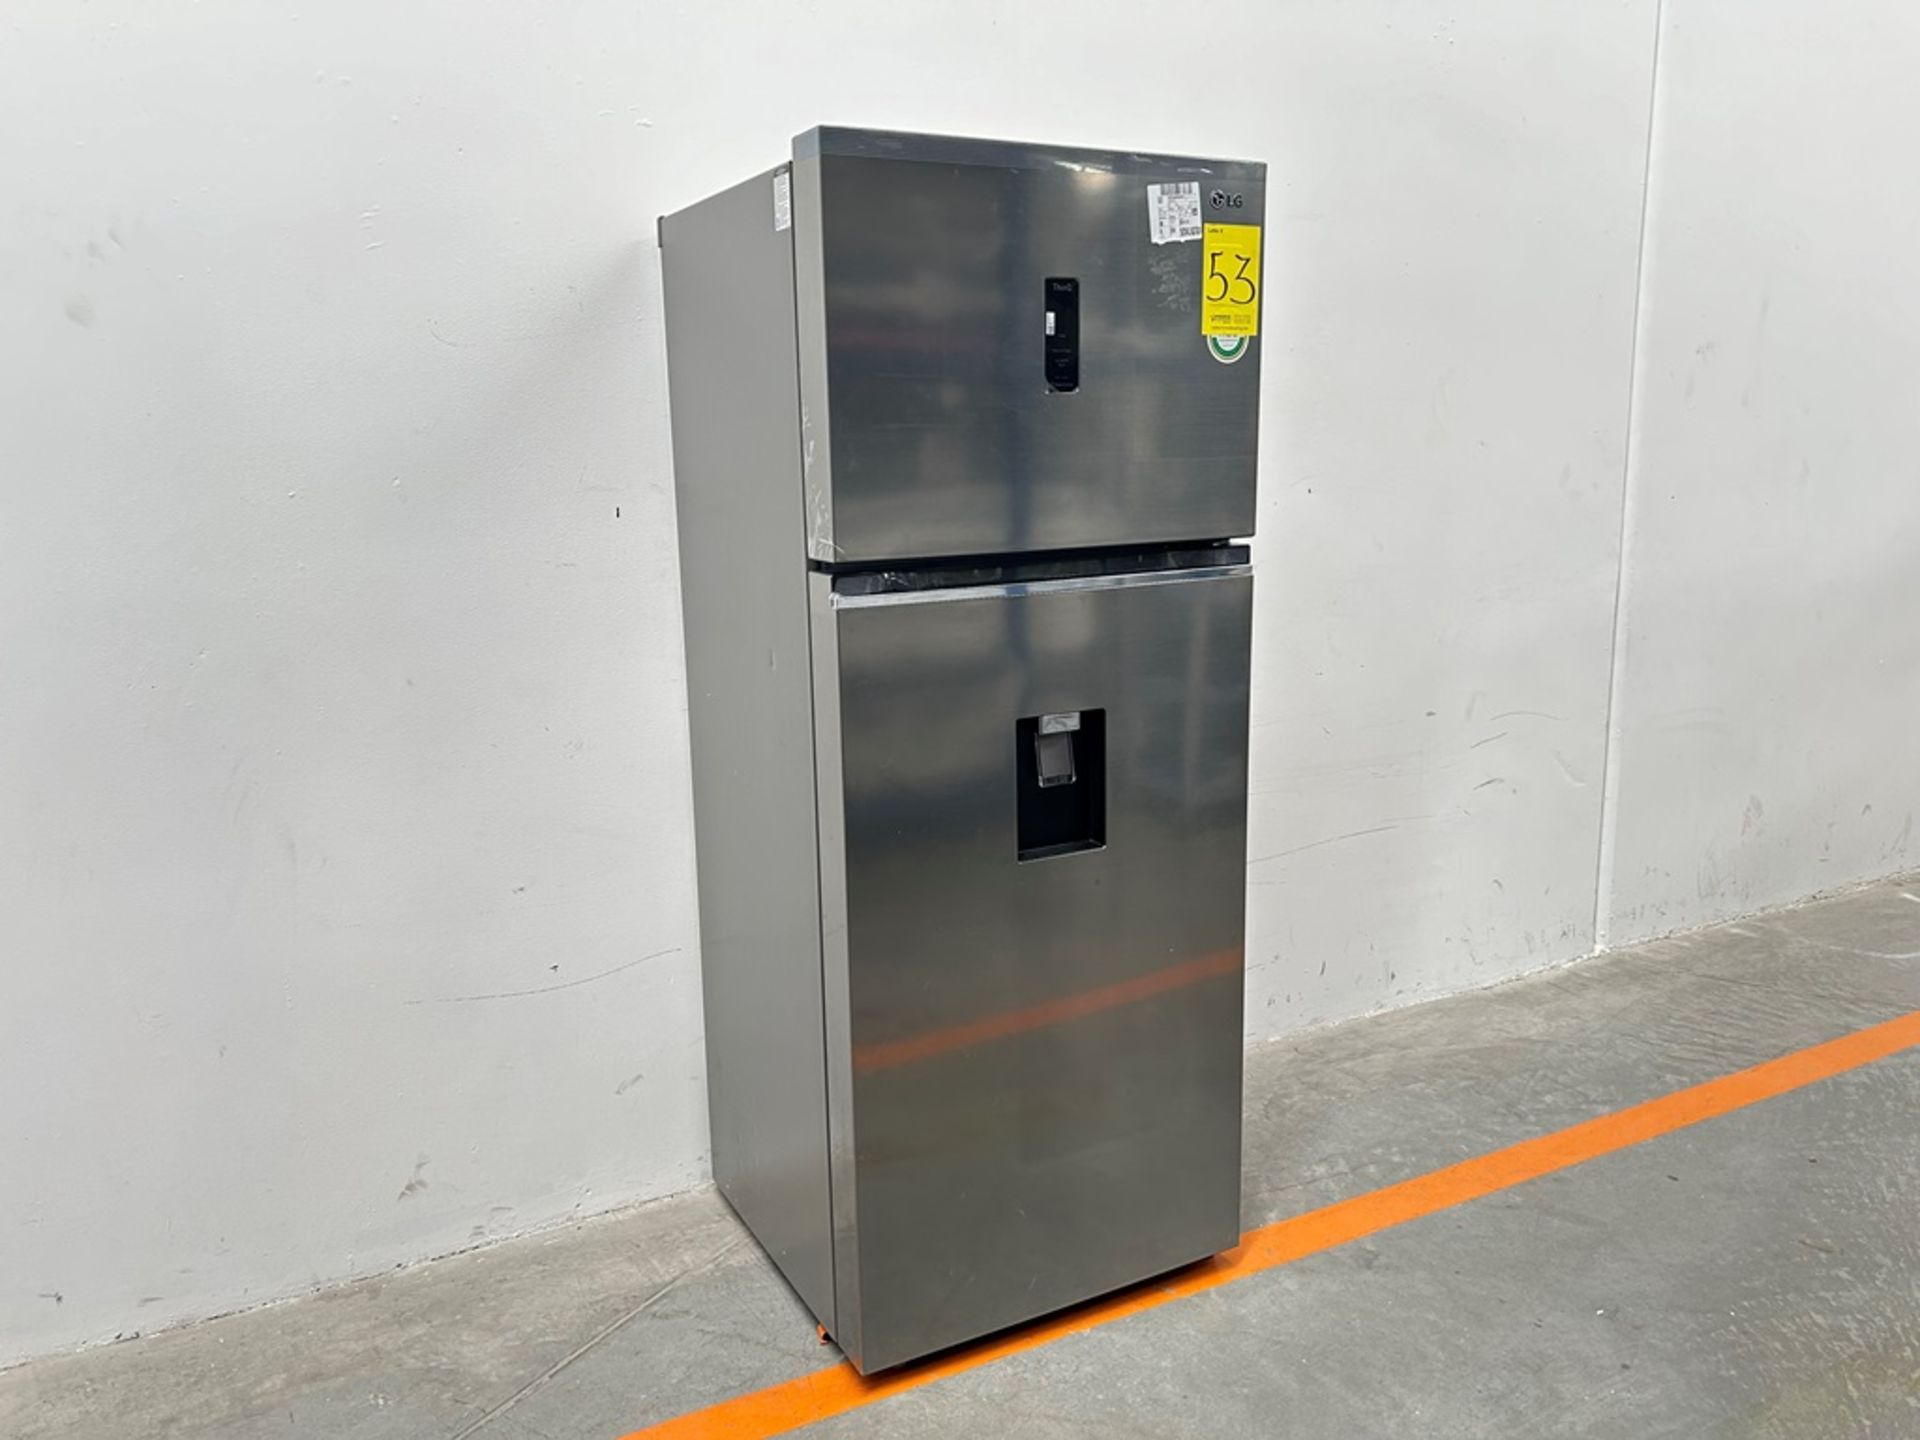 (NUEVO) Refrigerador con dispensador de agua Marca LG, Modelo VT40AWP, Serie 48304, Color GRIS - Image 2 of 11